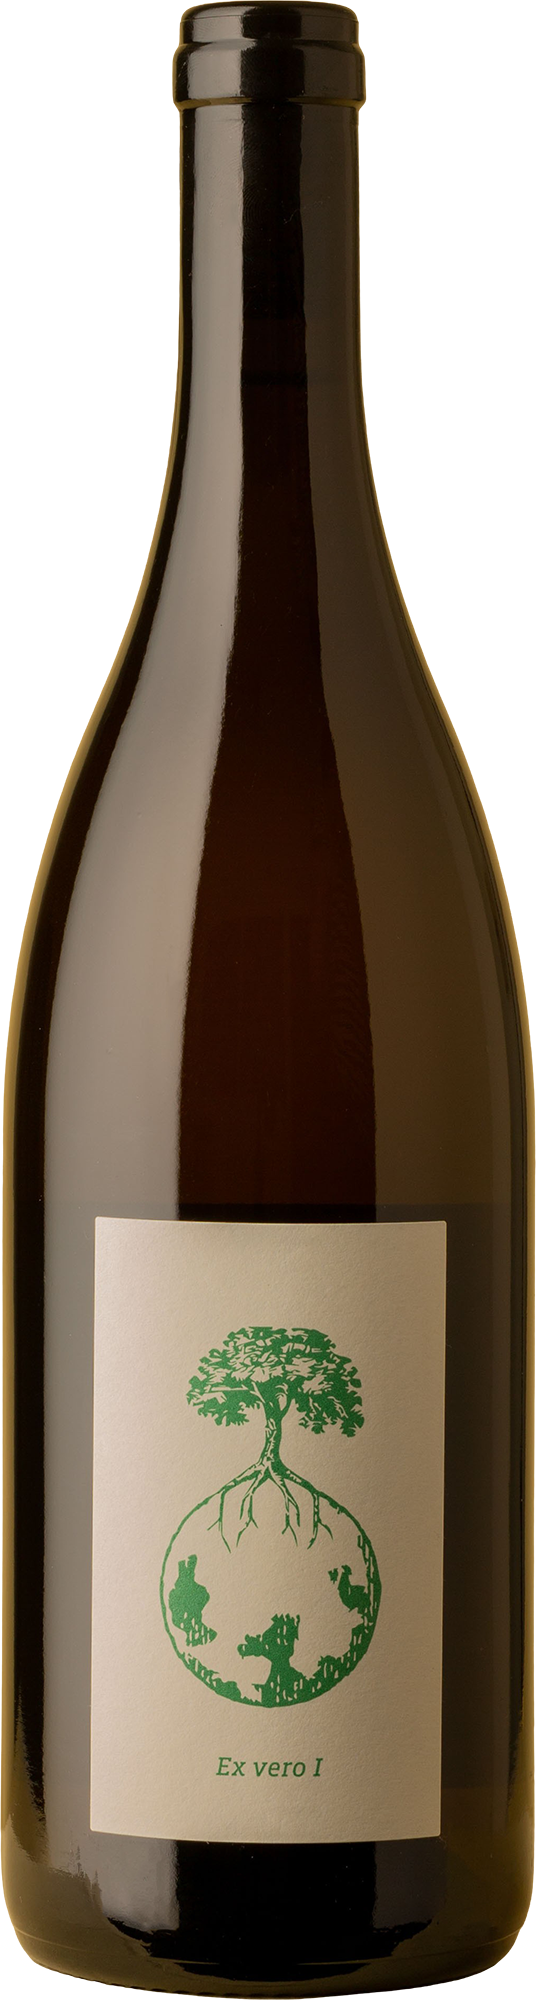 Werlitsch - Ex-Vero I Sauvignon Blanc/Chardonnay 2019 Orange Wine